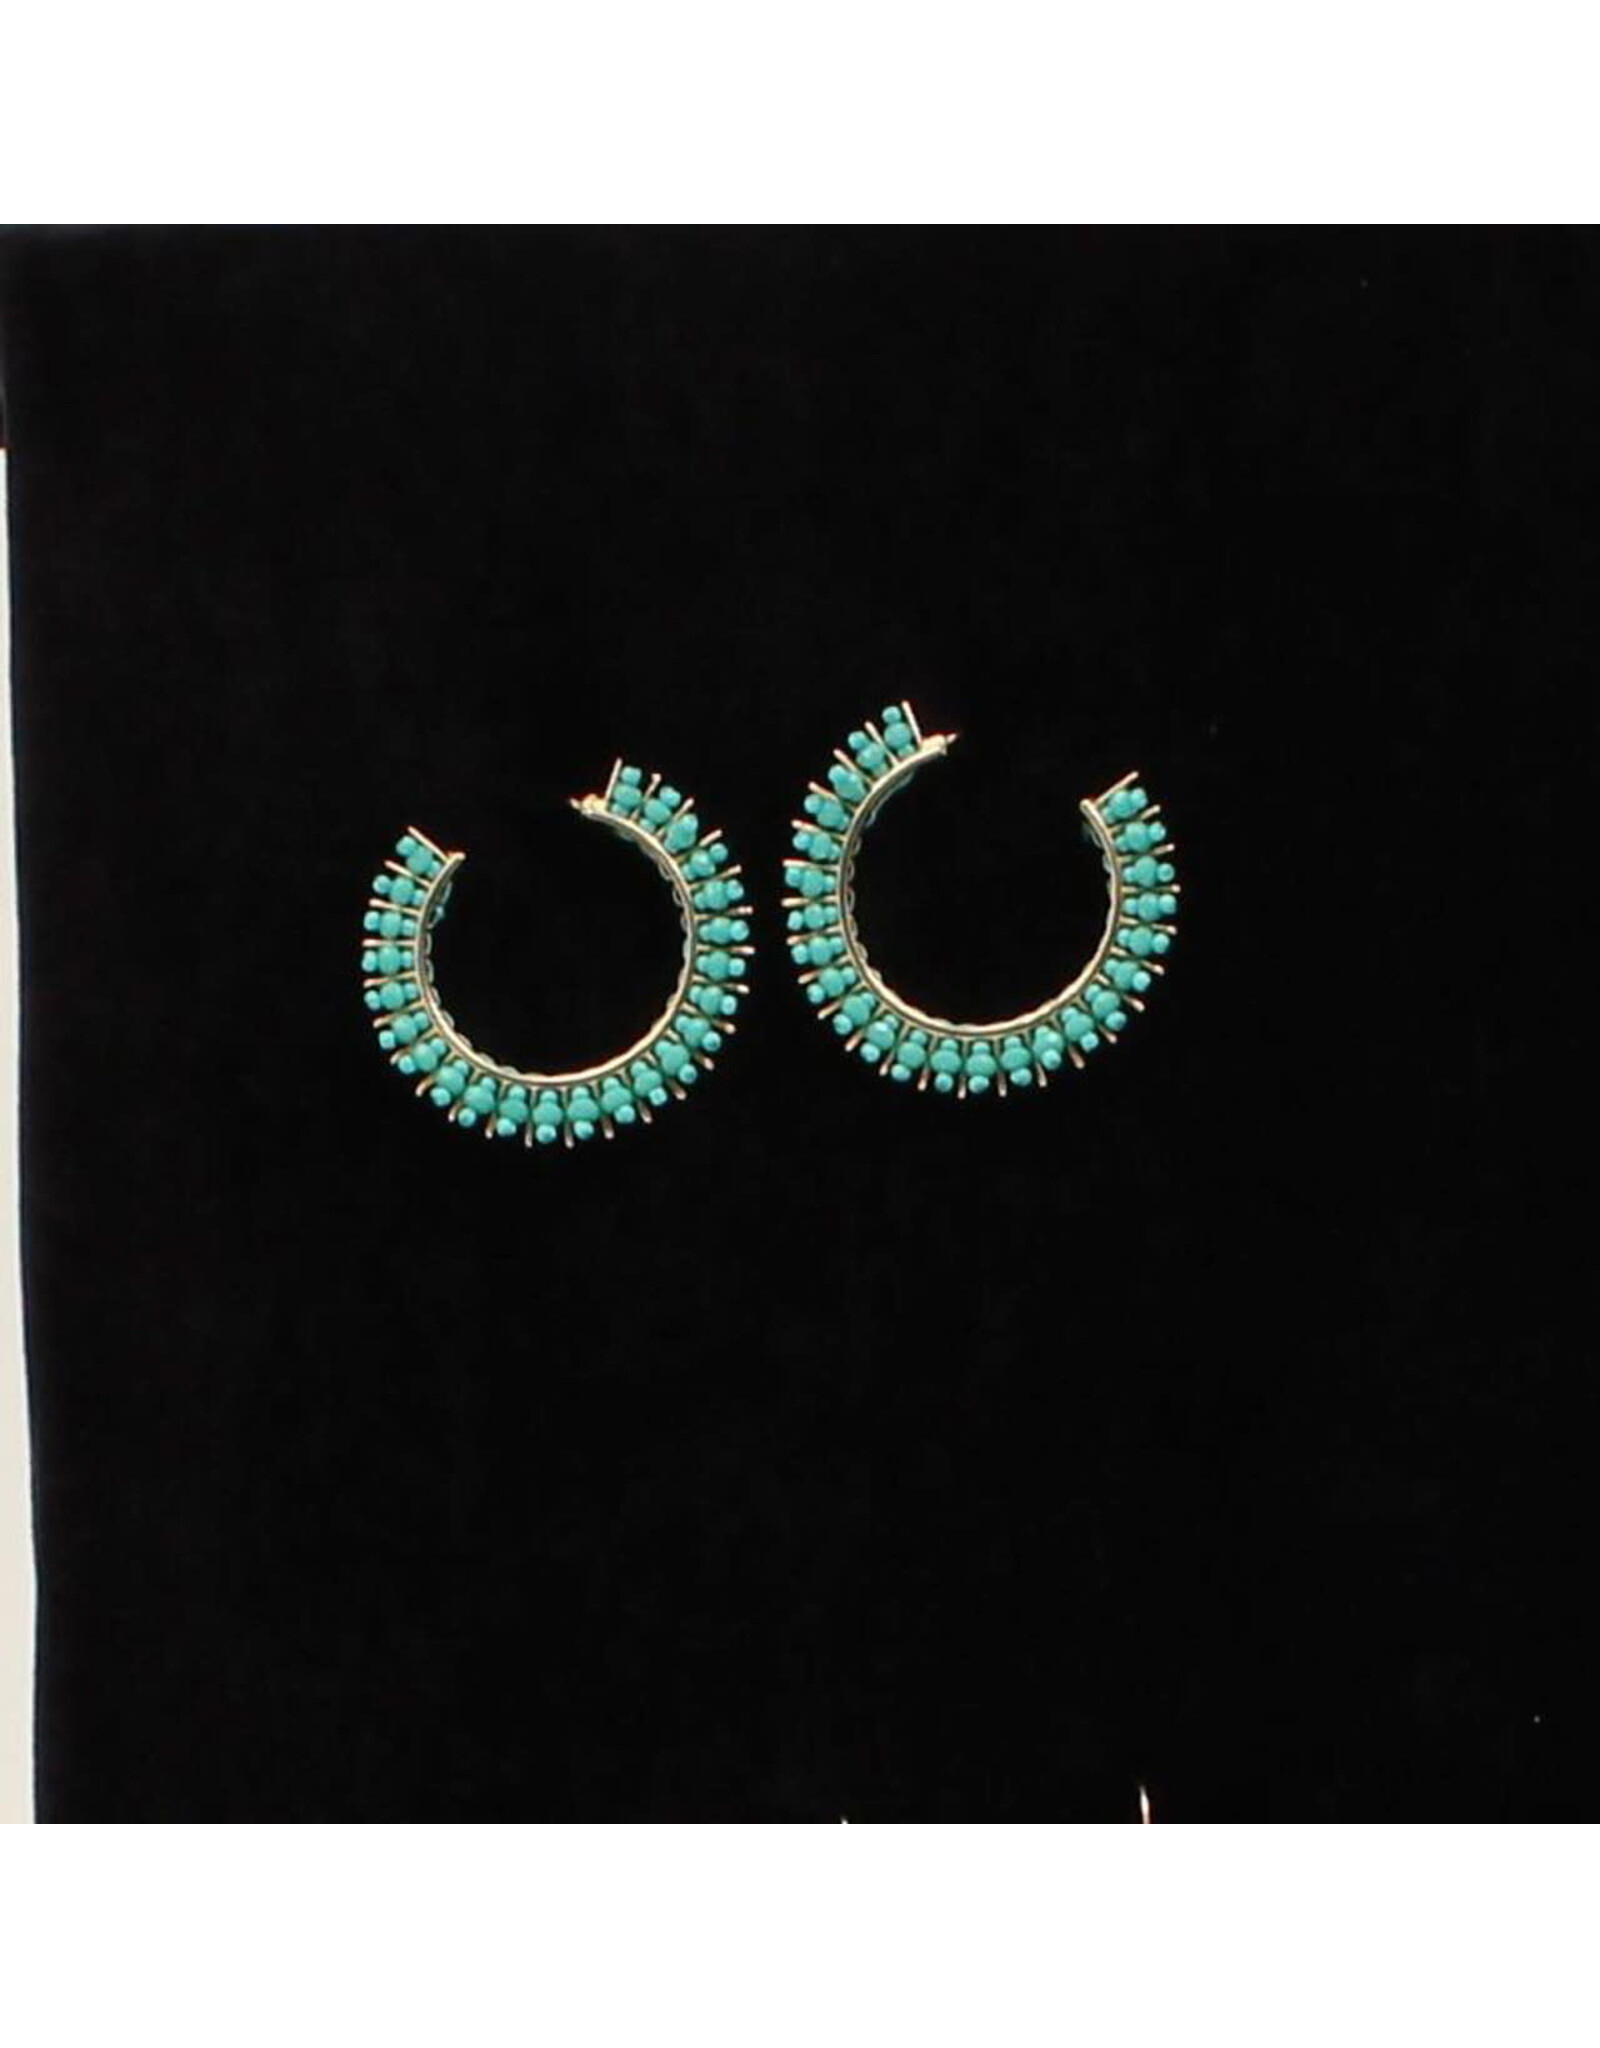 Silver Strike Turquoise Spike Earrings D460013233